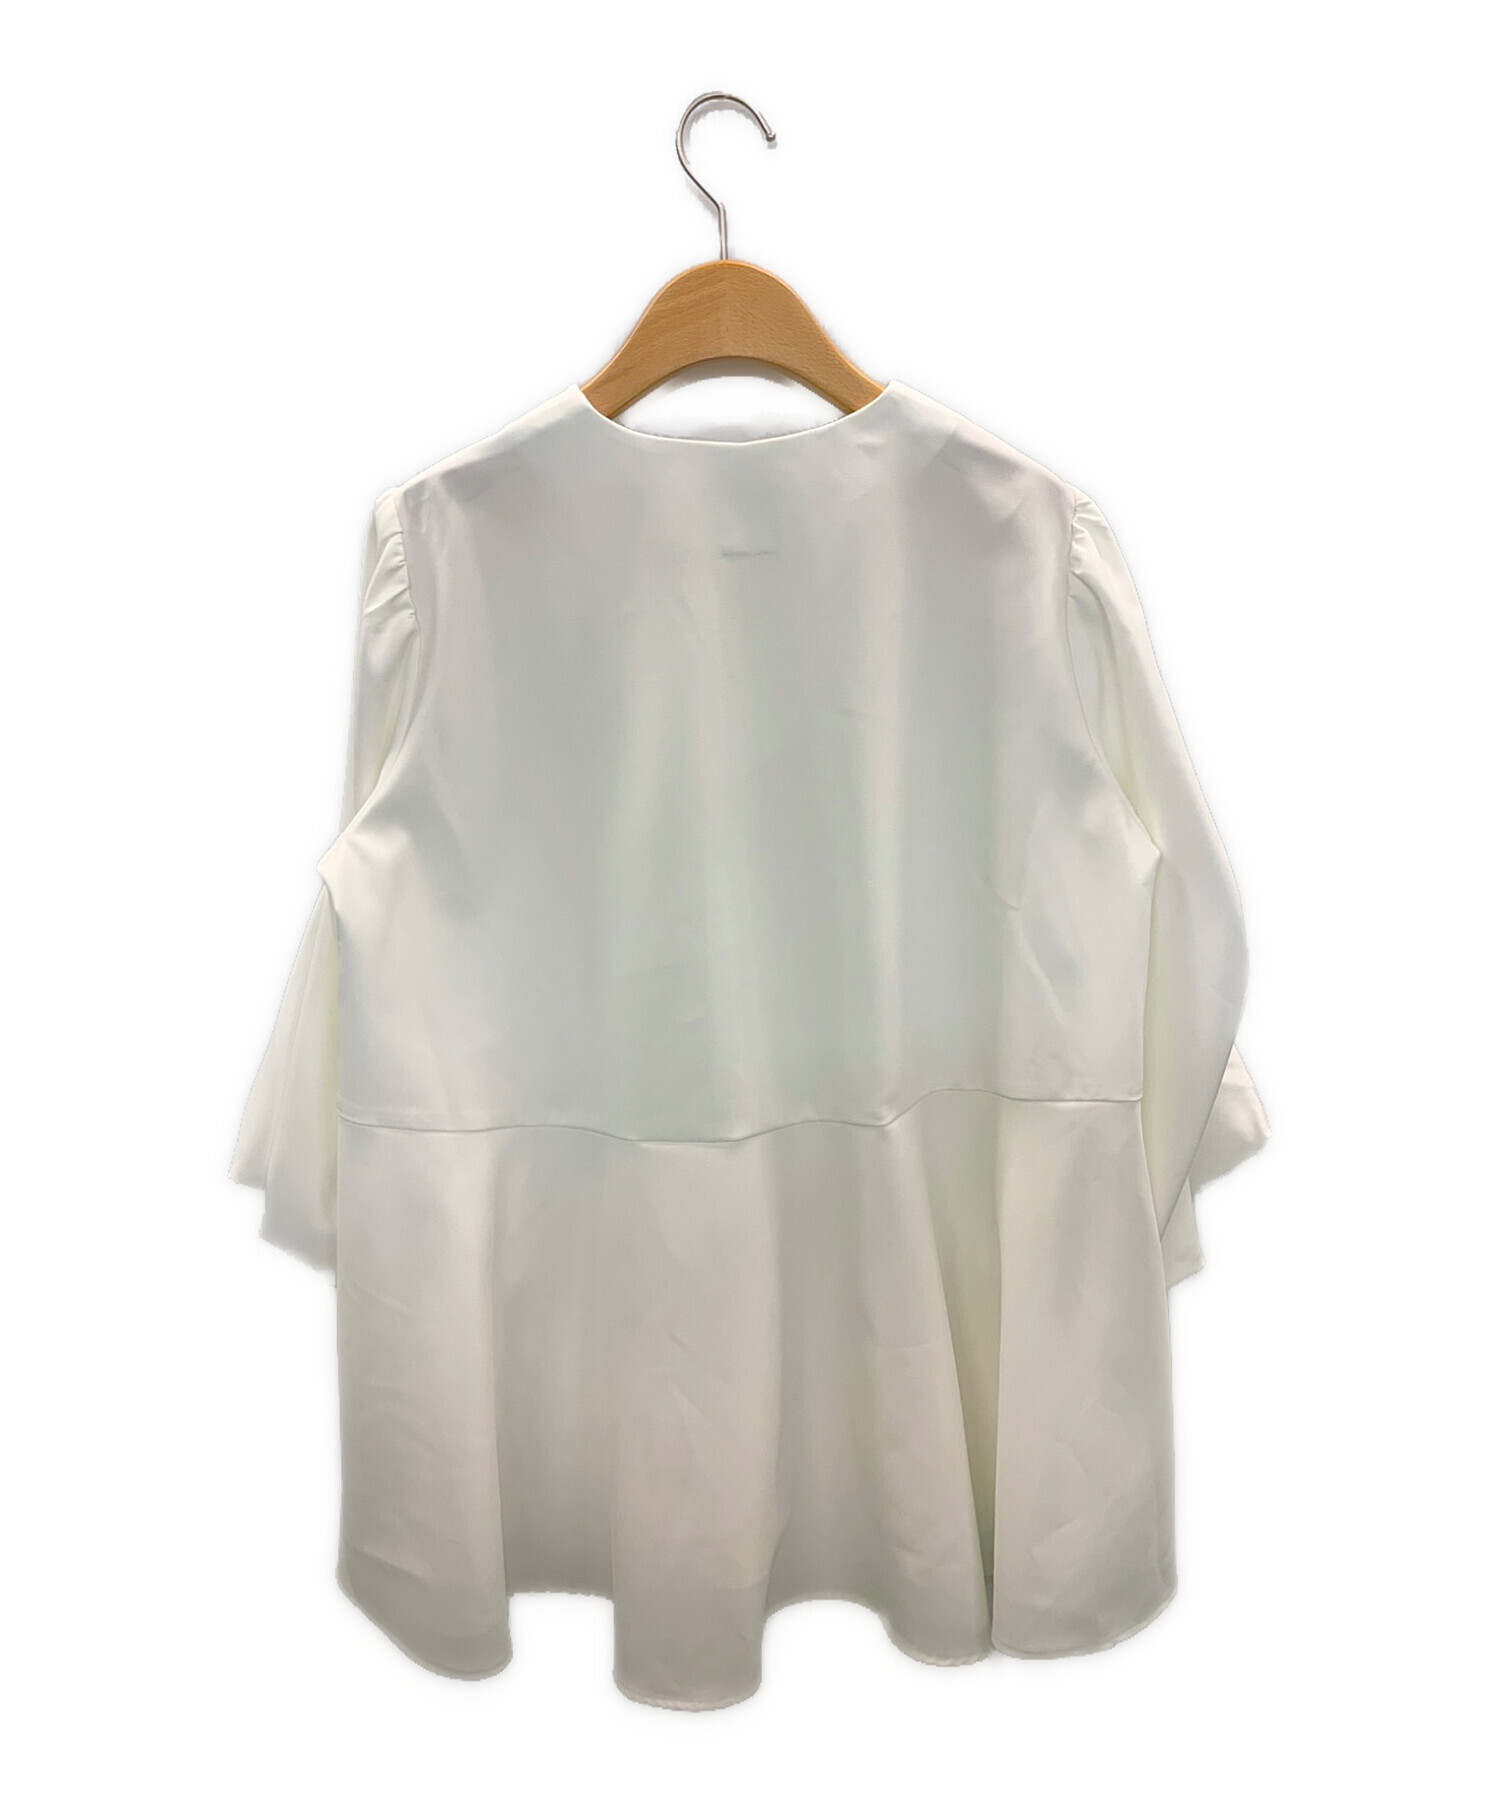 CADUNE (カデュネ) 裾フレアブラウス ホワイト サイズ:38